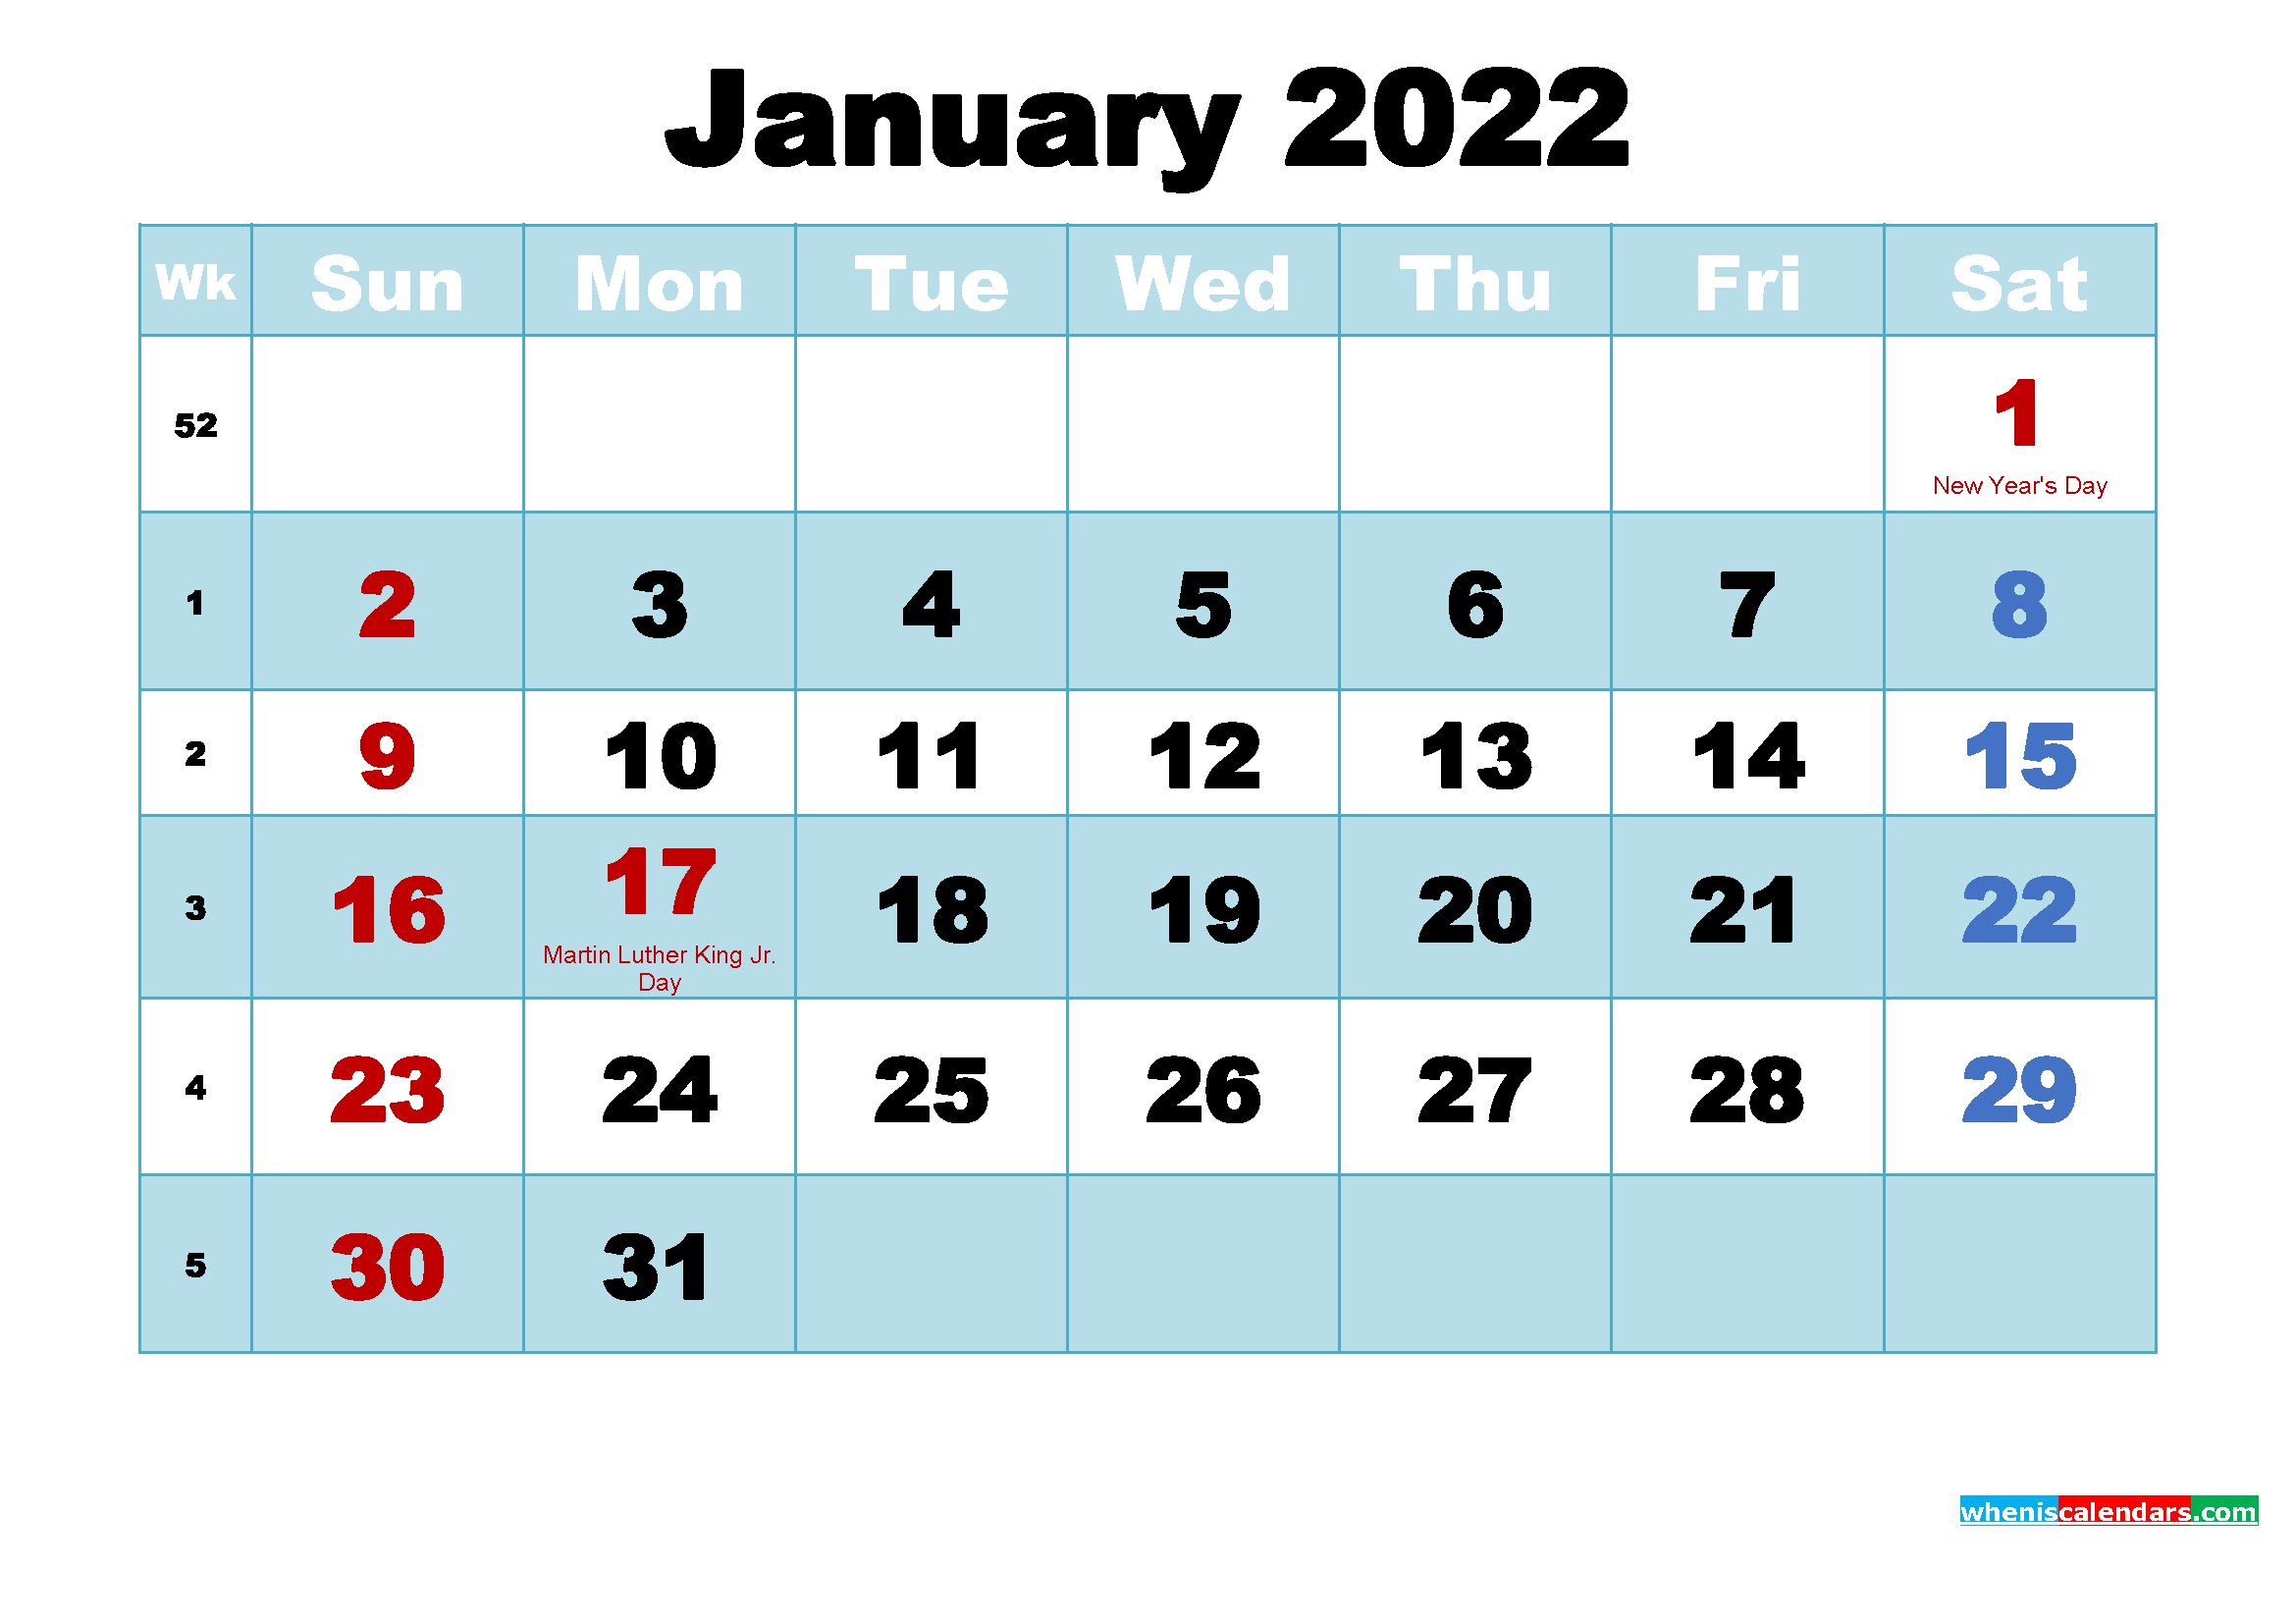 January 2022 Calendar Wallpaper High Resolution throughout 2022 Desk Top Calendar Free